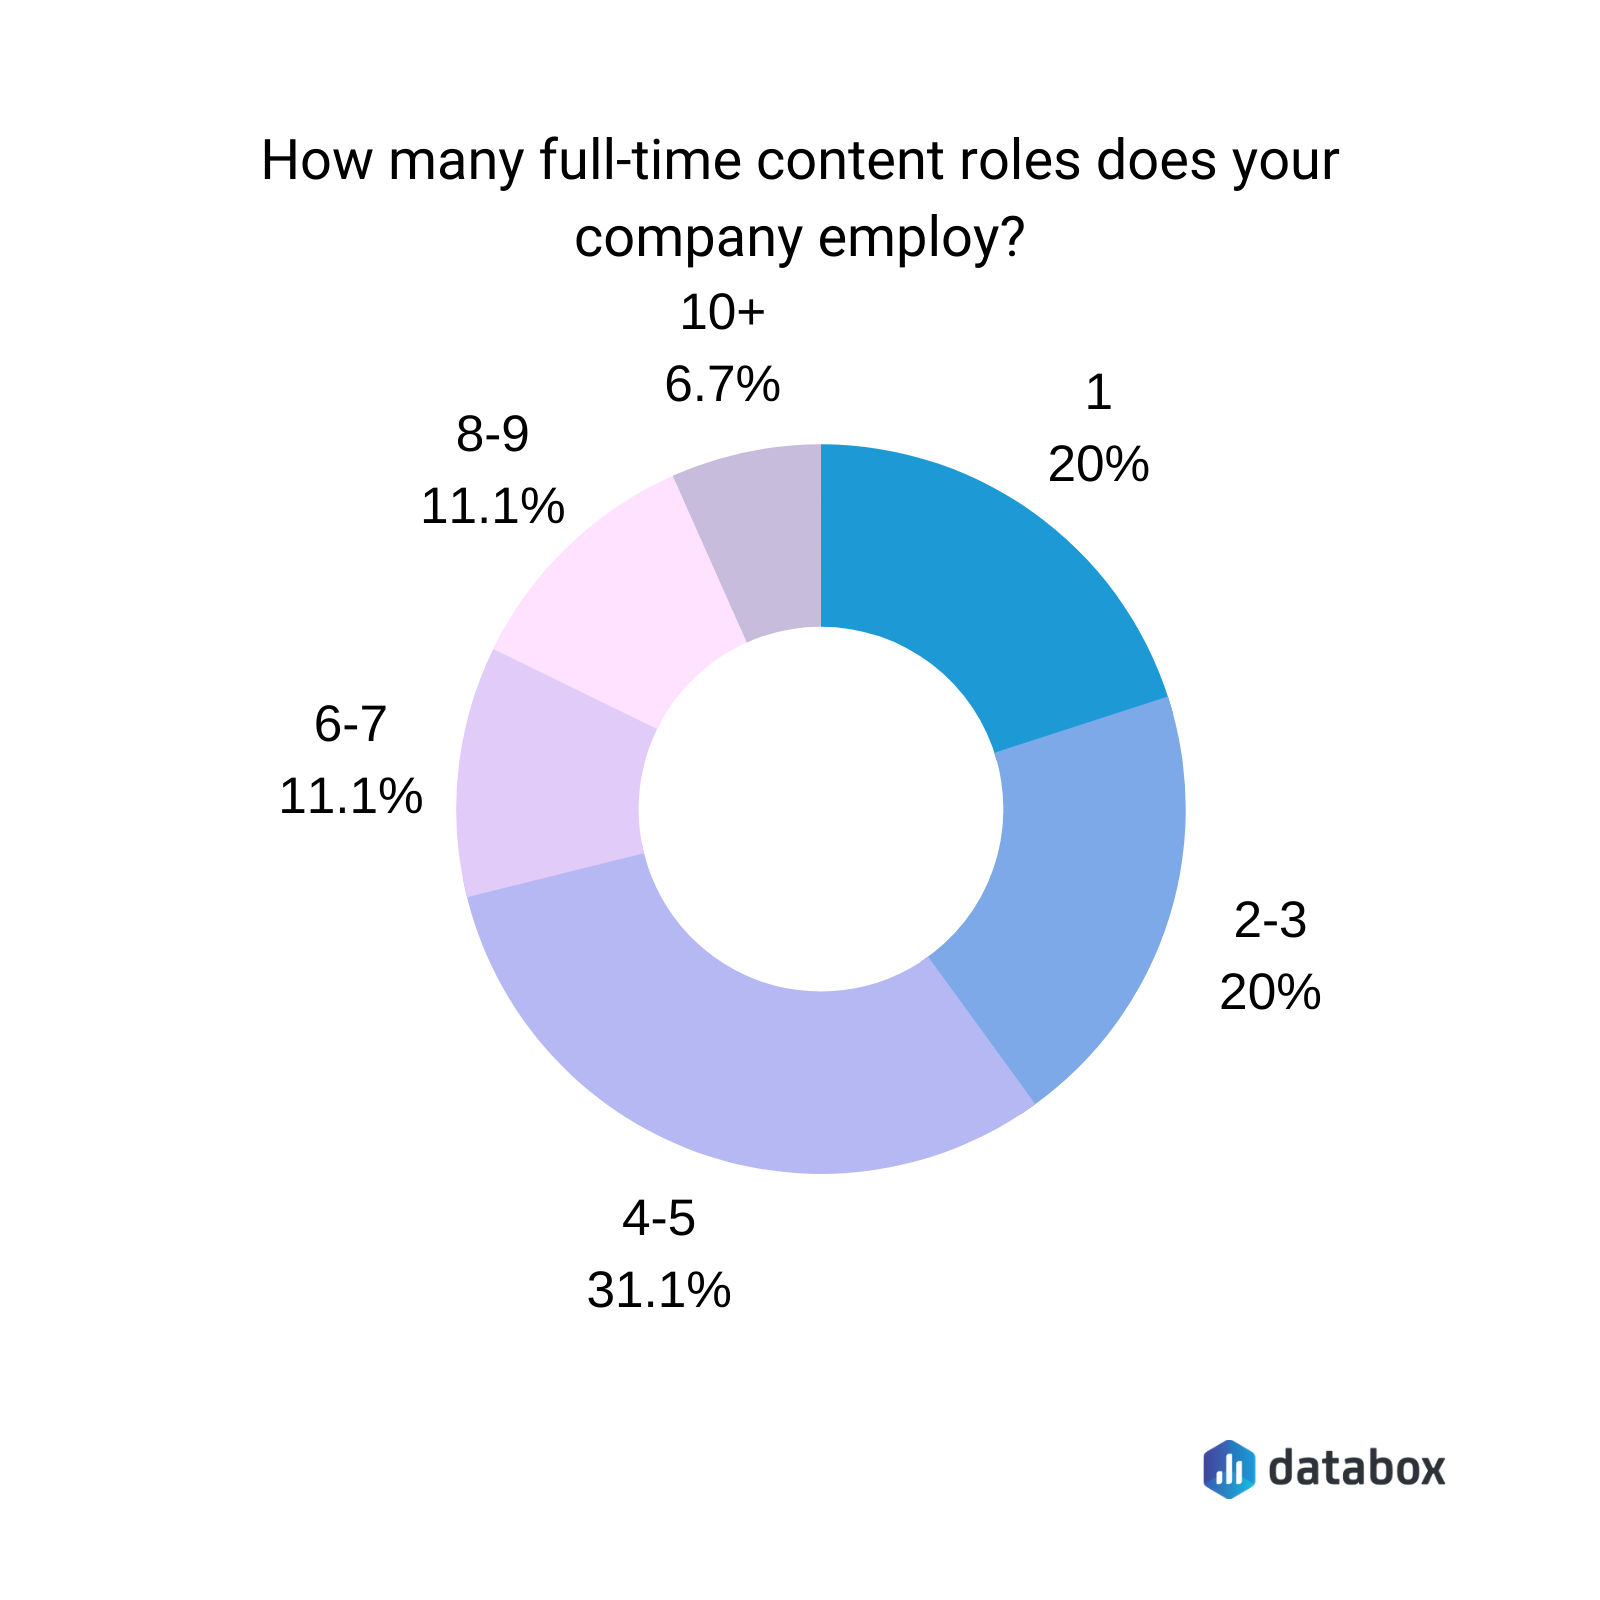 Quantas funções de conteúdo em tempo integral sua empresa emprega?